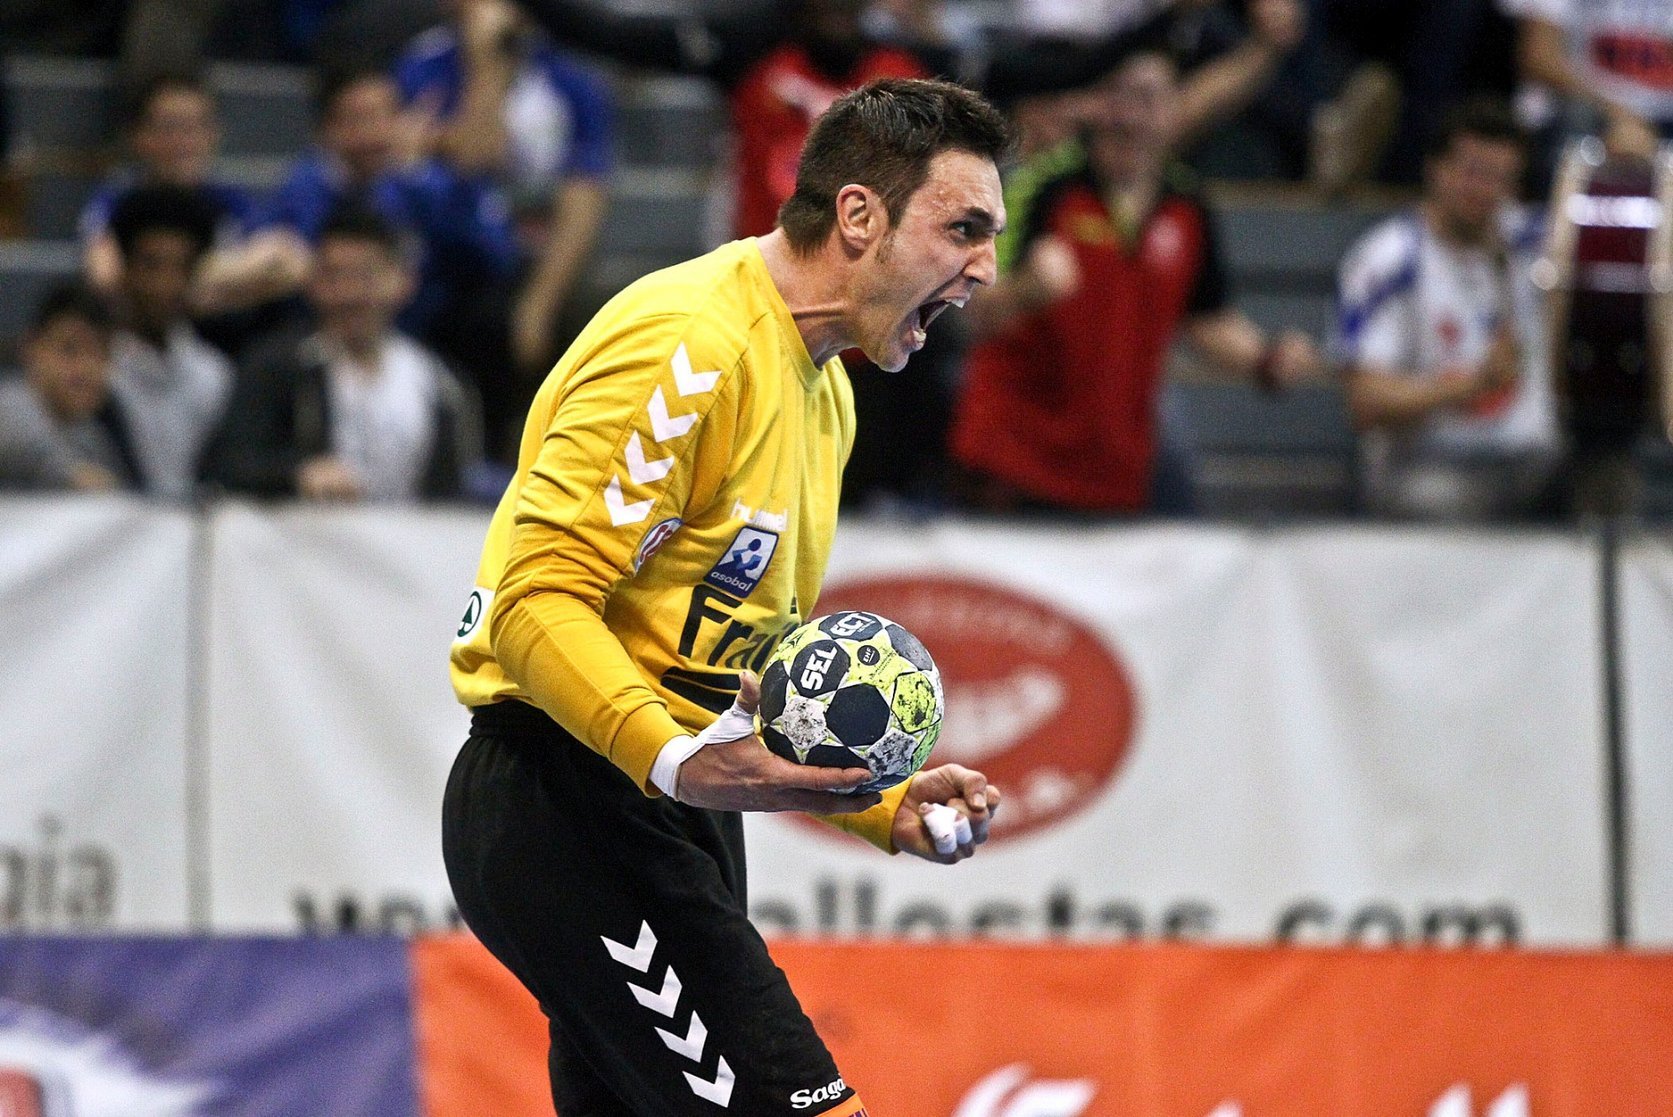 Vicente Álamo s'ha convertit, en el seu retorn, en una peça molt important de l'equip